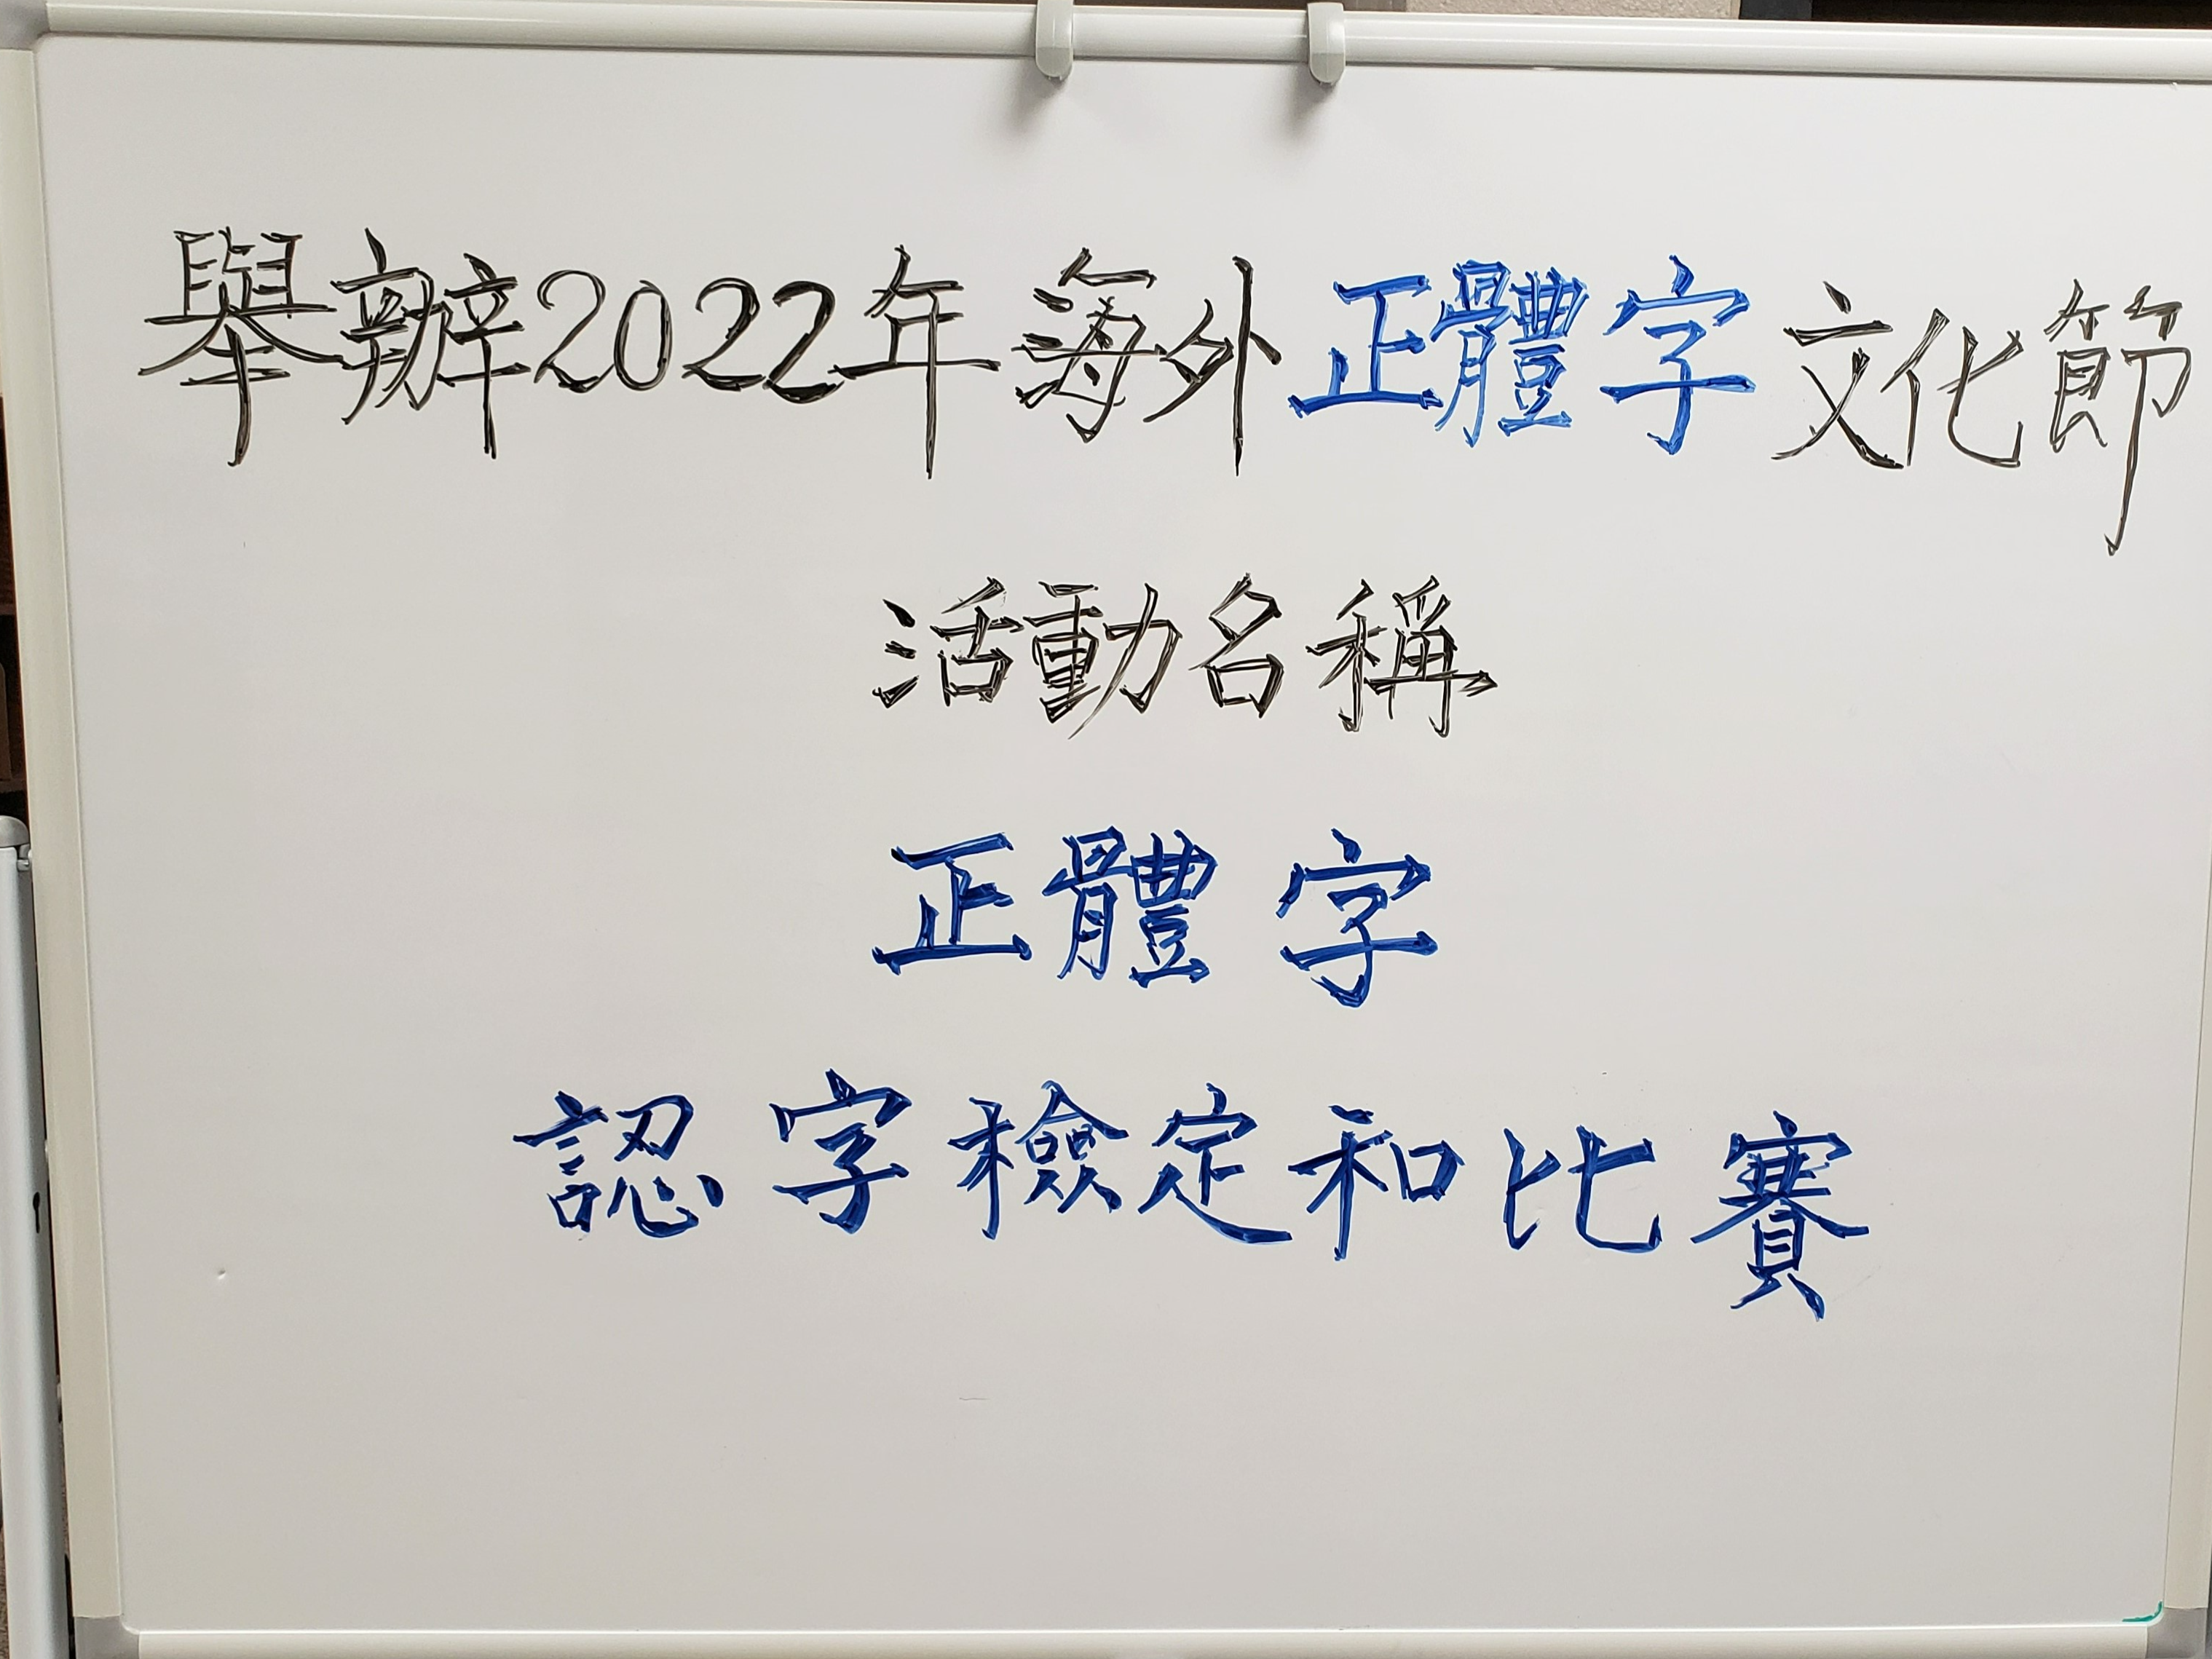 北卡洛麗中文學校海外正體漢字文化節系列活動-正體字認字比賽及檢定圖片